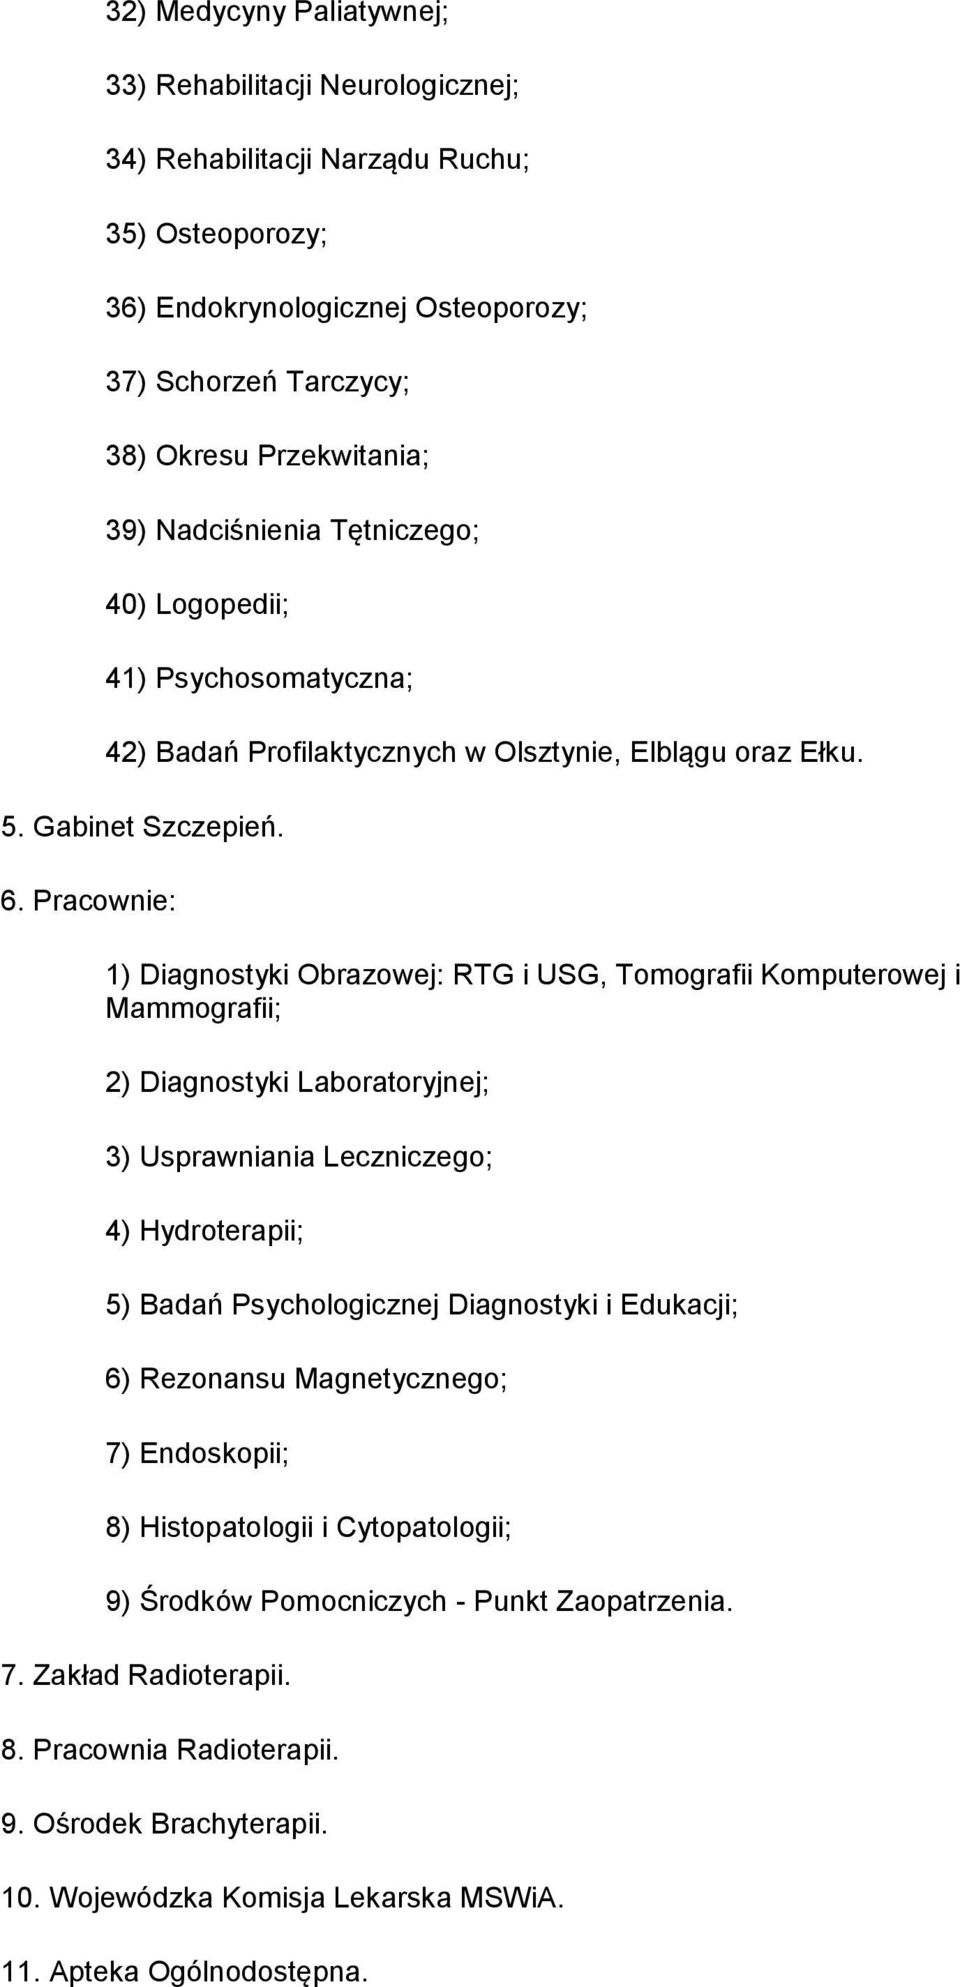 Pracownie: 1) Diagnostyki Obrazowej: RTG i USG, Tomografii Komputerowej i Mammografii; 2) Diagnostyki Laboratoryjnej; 3) Usprawniania Leczniczego; 4) Hydroterapii; 5) Badań Psychologicznej